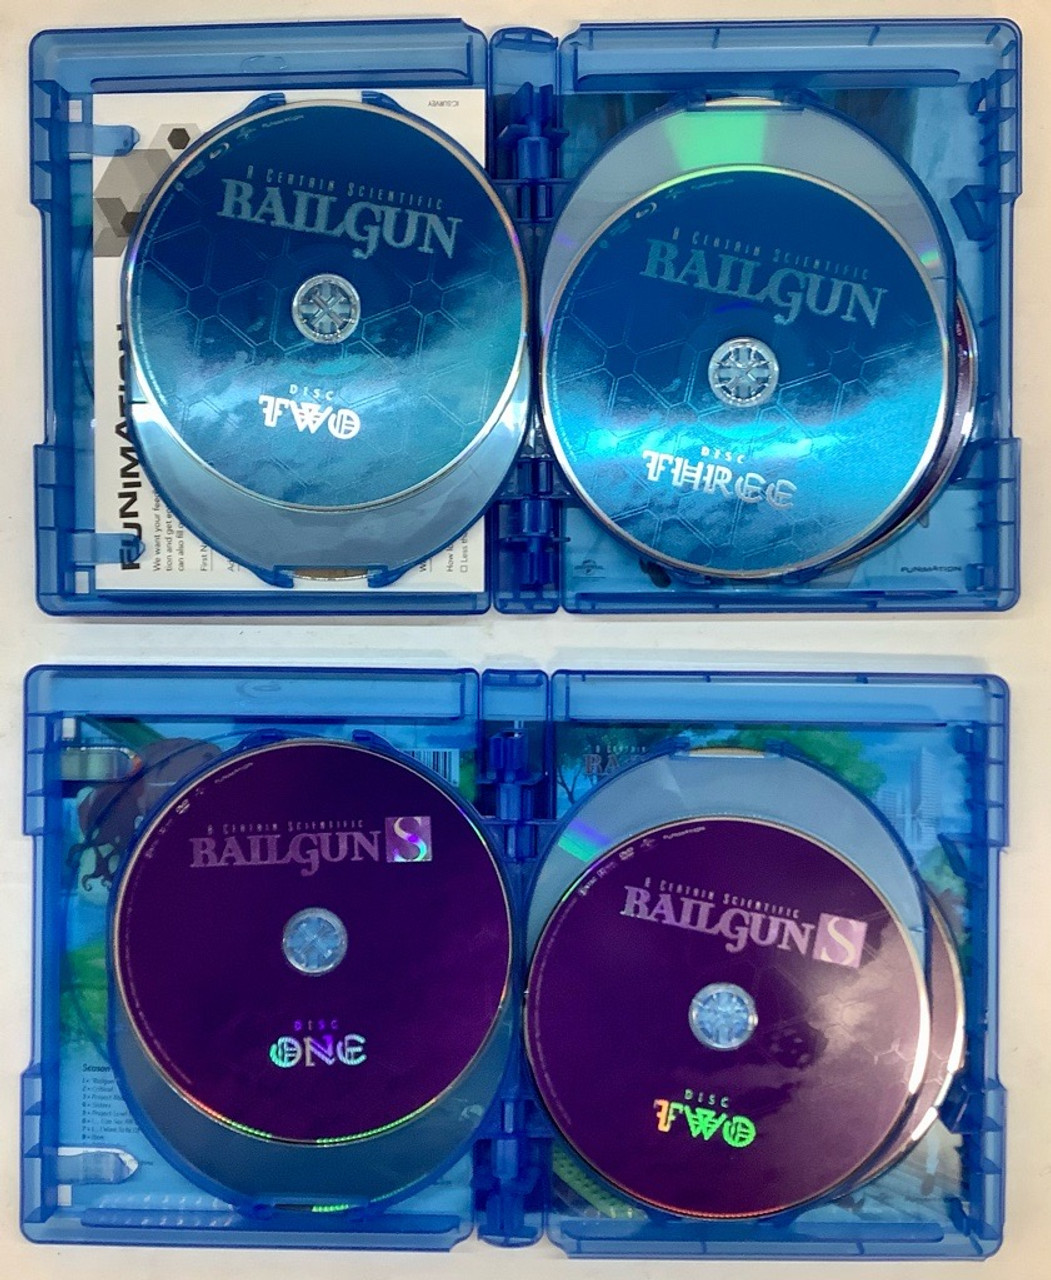  A Certain Scientific Railgun Complete Season 2 Collection (Episodes  1-24) Blu-ray/DVD Combo : Movies & TV